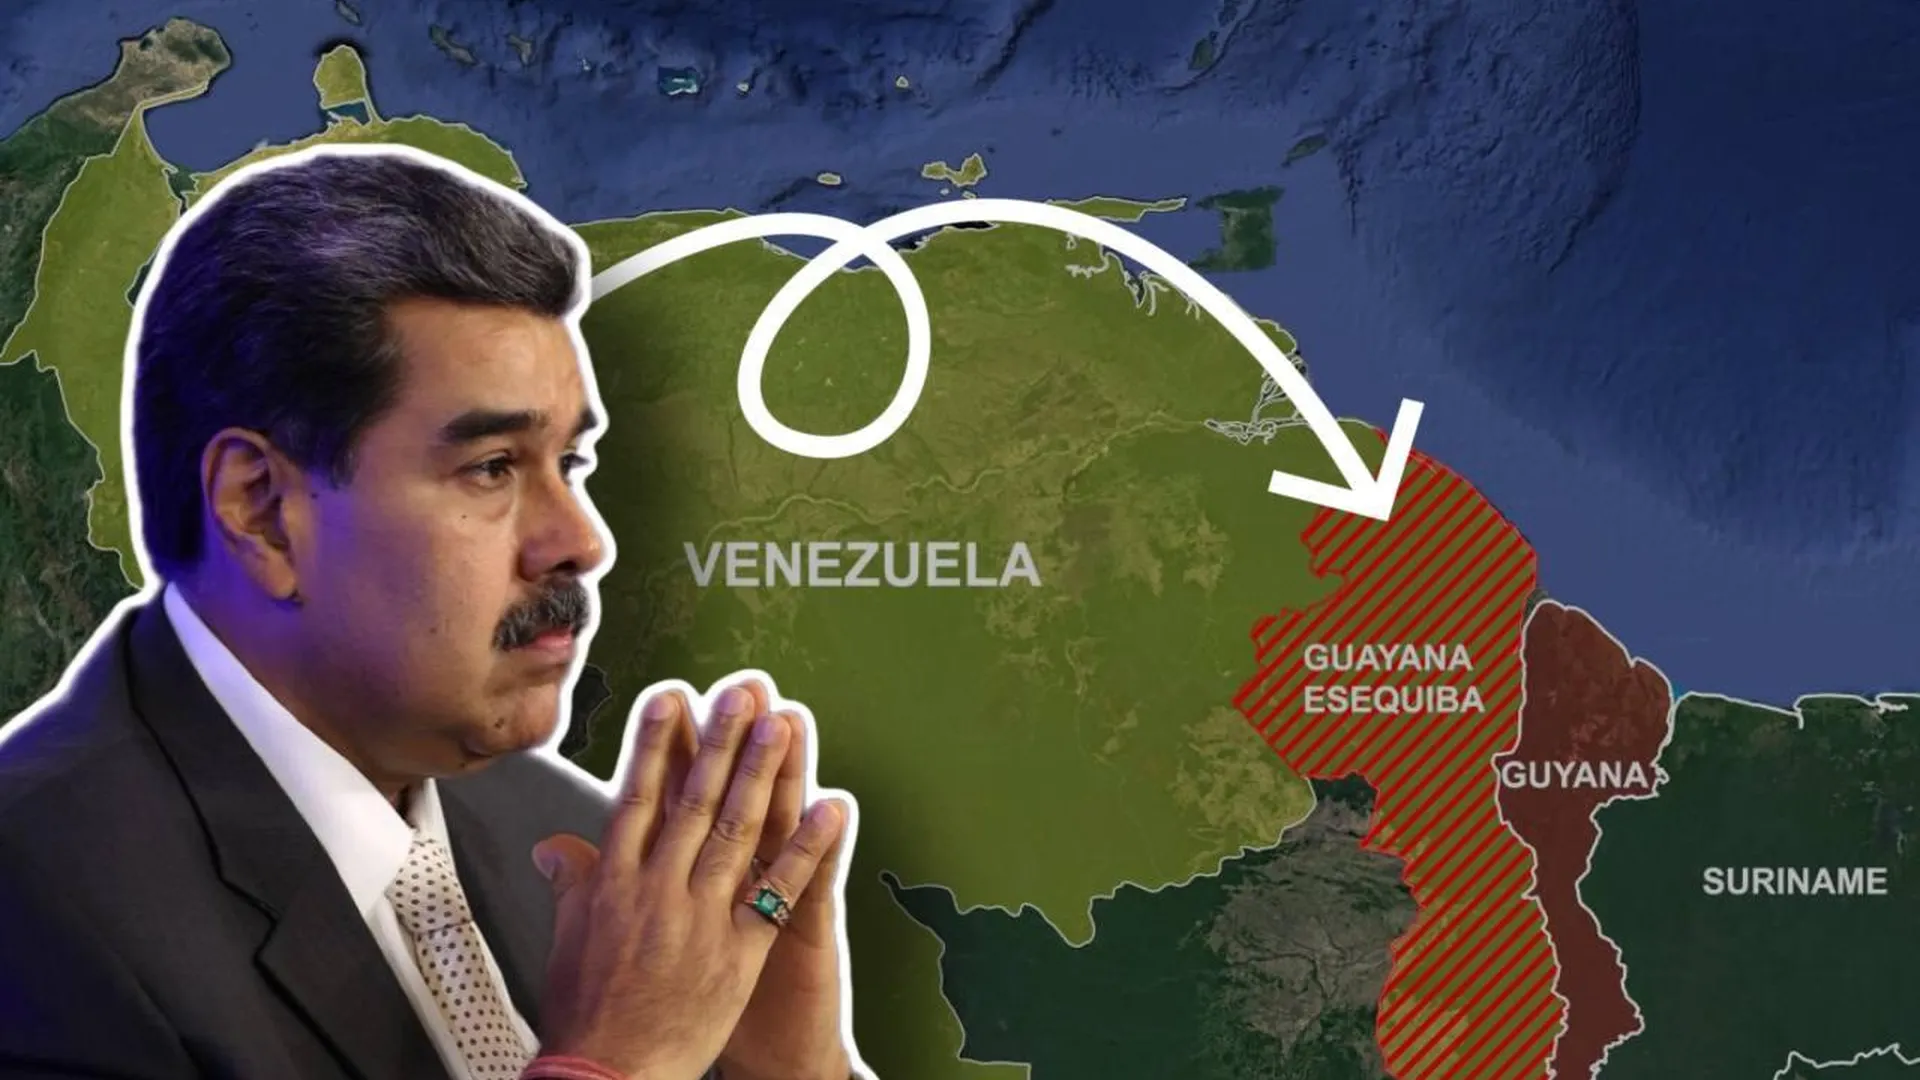 Беспроигрышная карта Мадуро. Запустит ли президент Венесуэлы эффект домино по Латинской Америке?